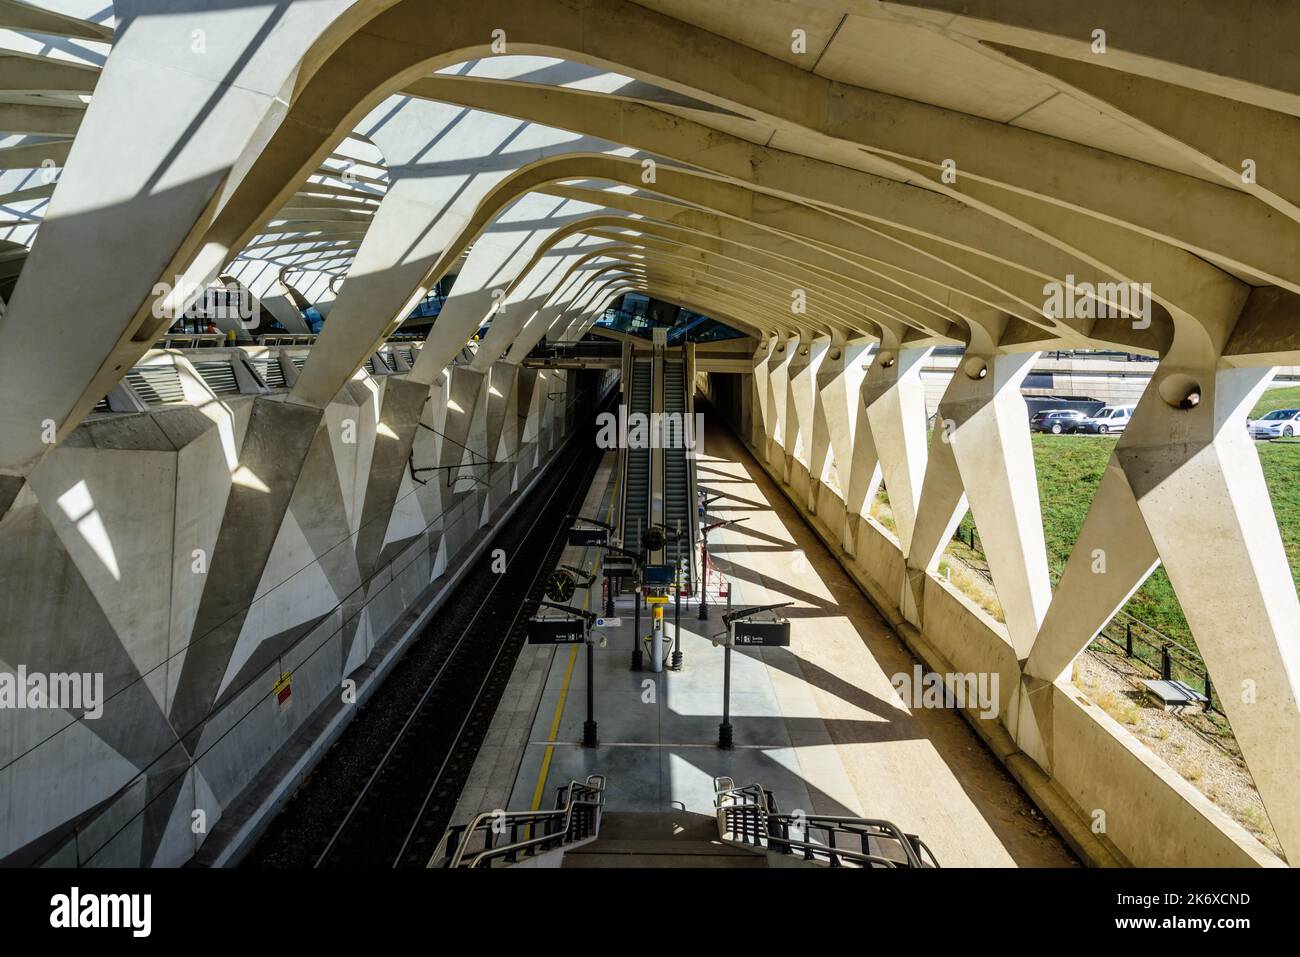 Lyon, Flughafen Saint-Exupery, Flughafenbahnhof Satolas von Architekt Santiago Calatrava, Rhone Alpes, Frankreich // Lyon, Airport Lyon Saint-Exupery, Stock Photo